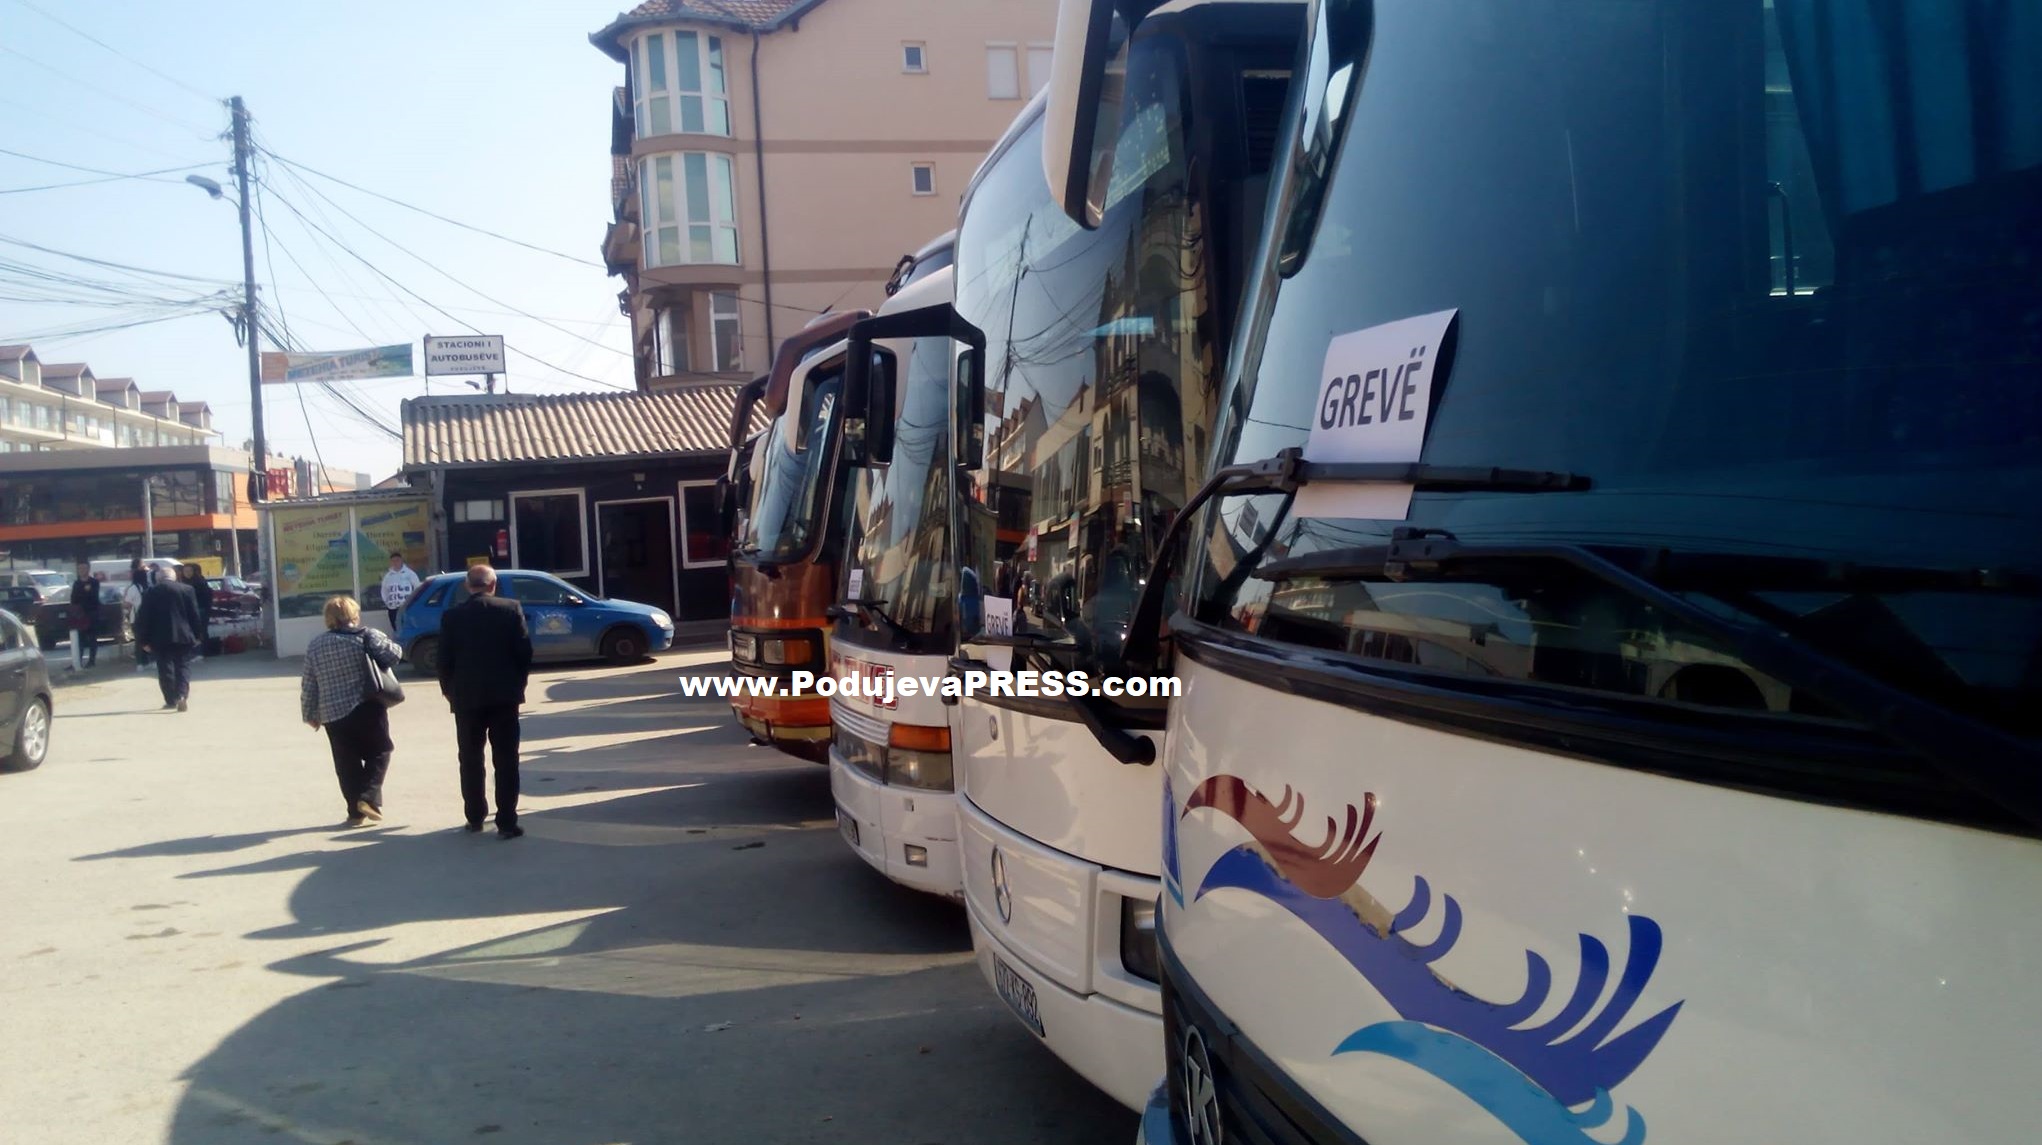  Autobusët Podujevë-Prishtinë në grevë, udhëtarët në mëshirën e taksive ilegalë |PAMJE